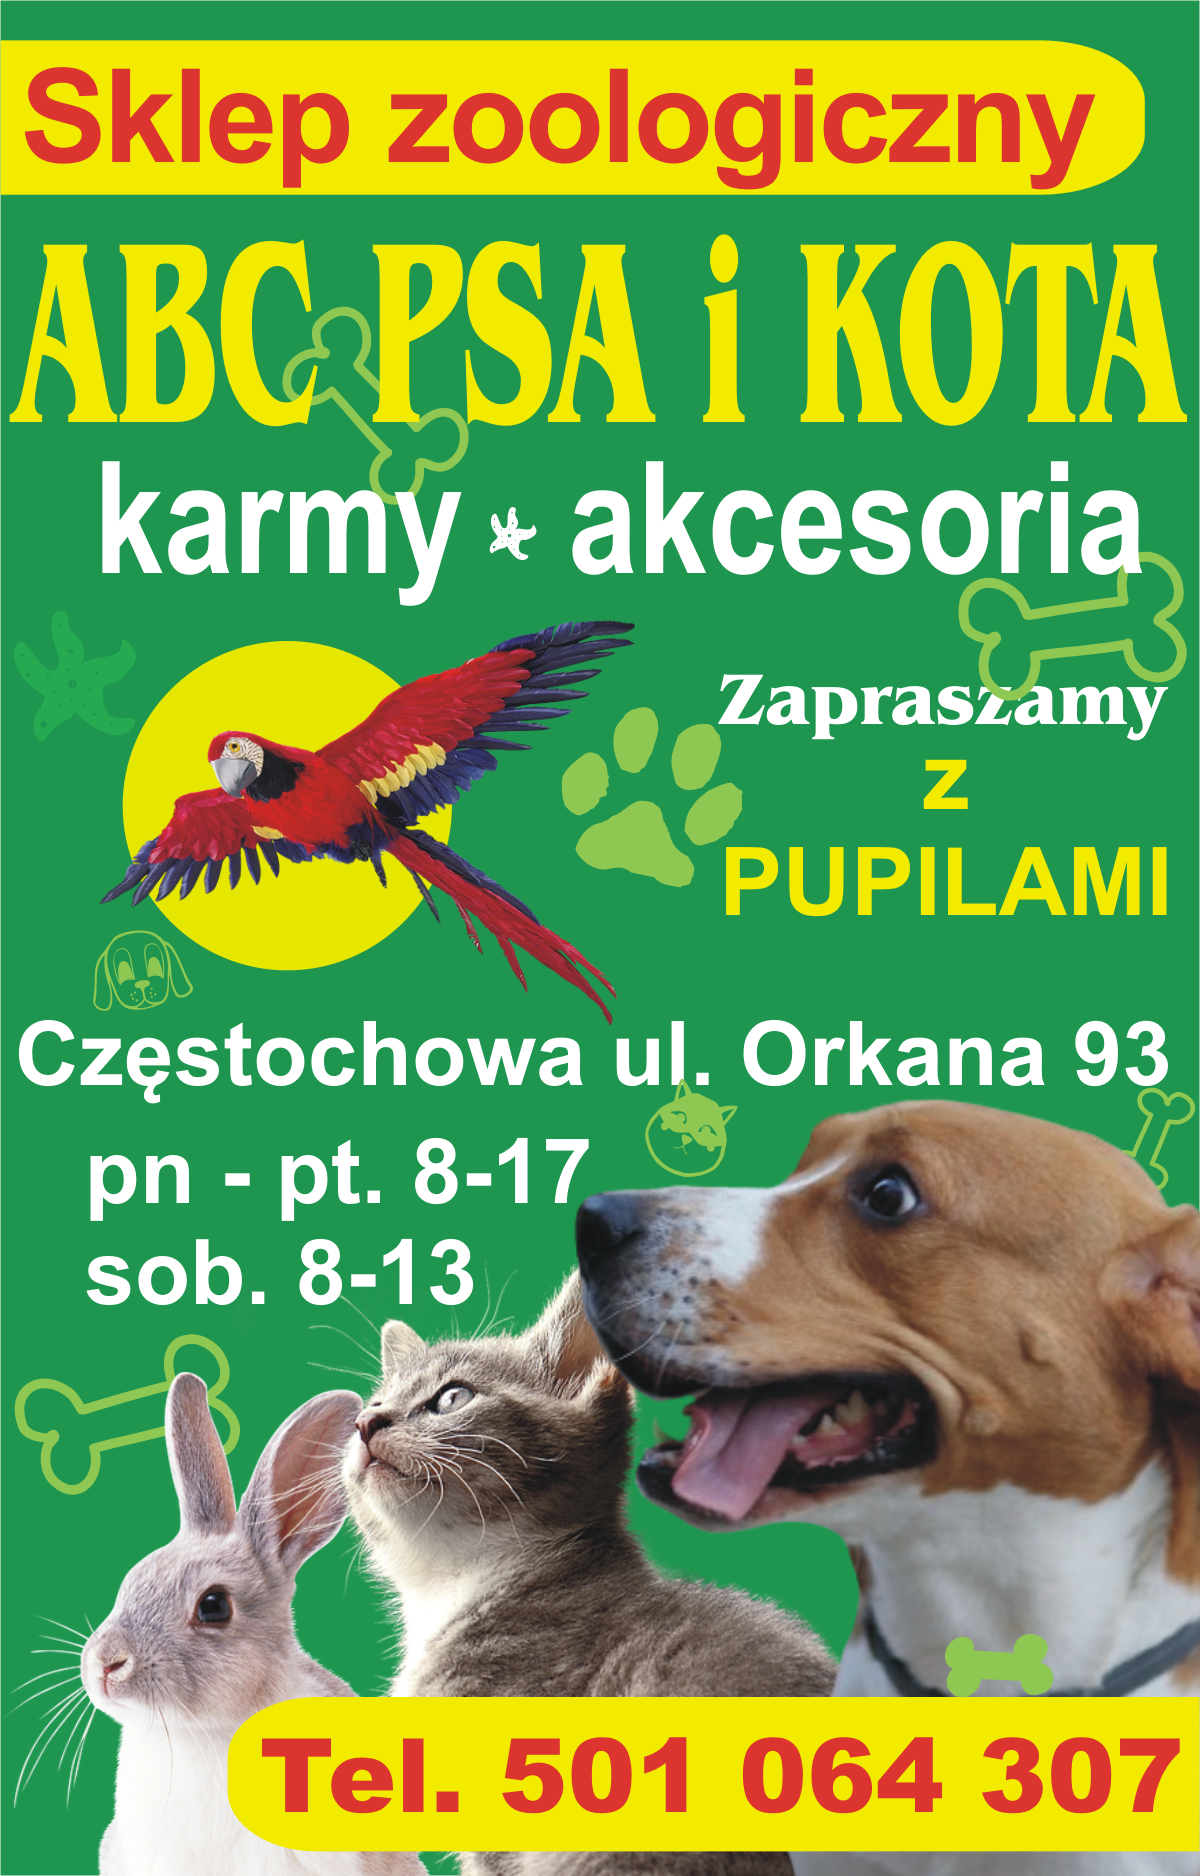 Sklep zoologiczny ABC Psa i Kota